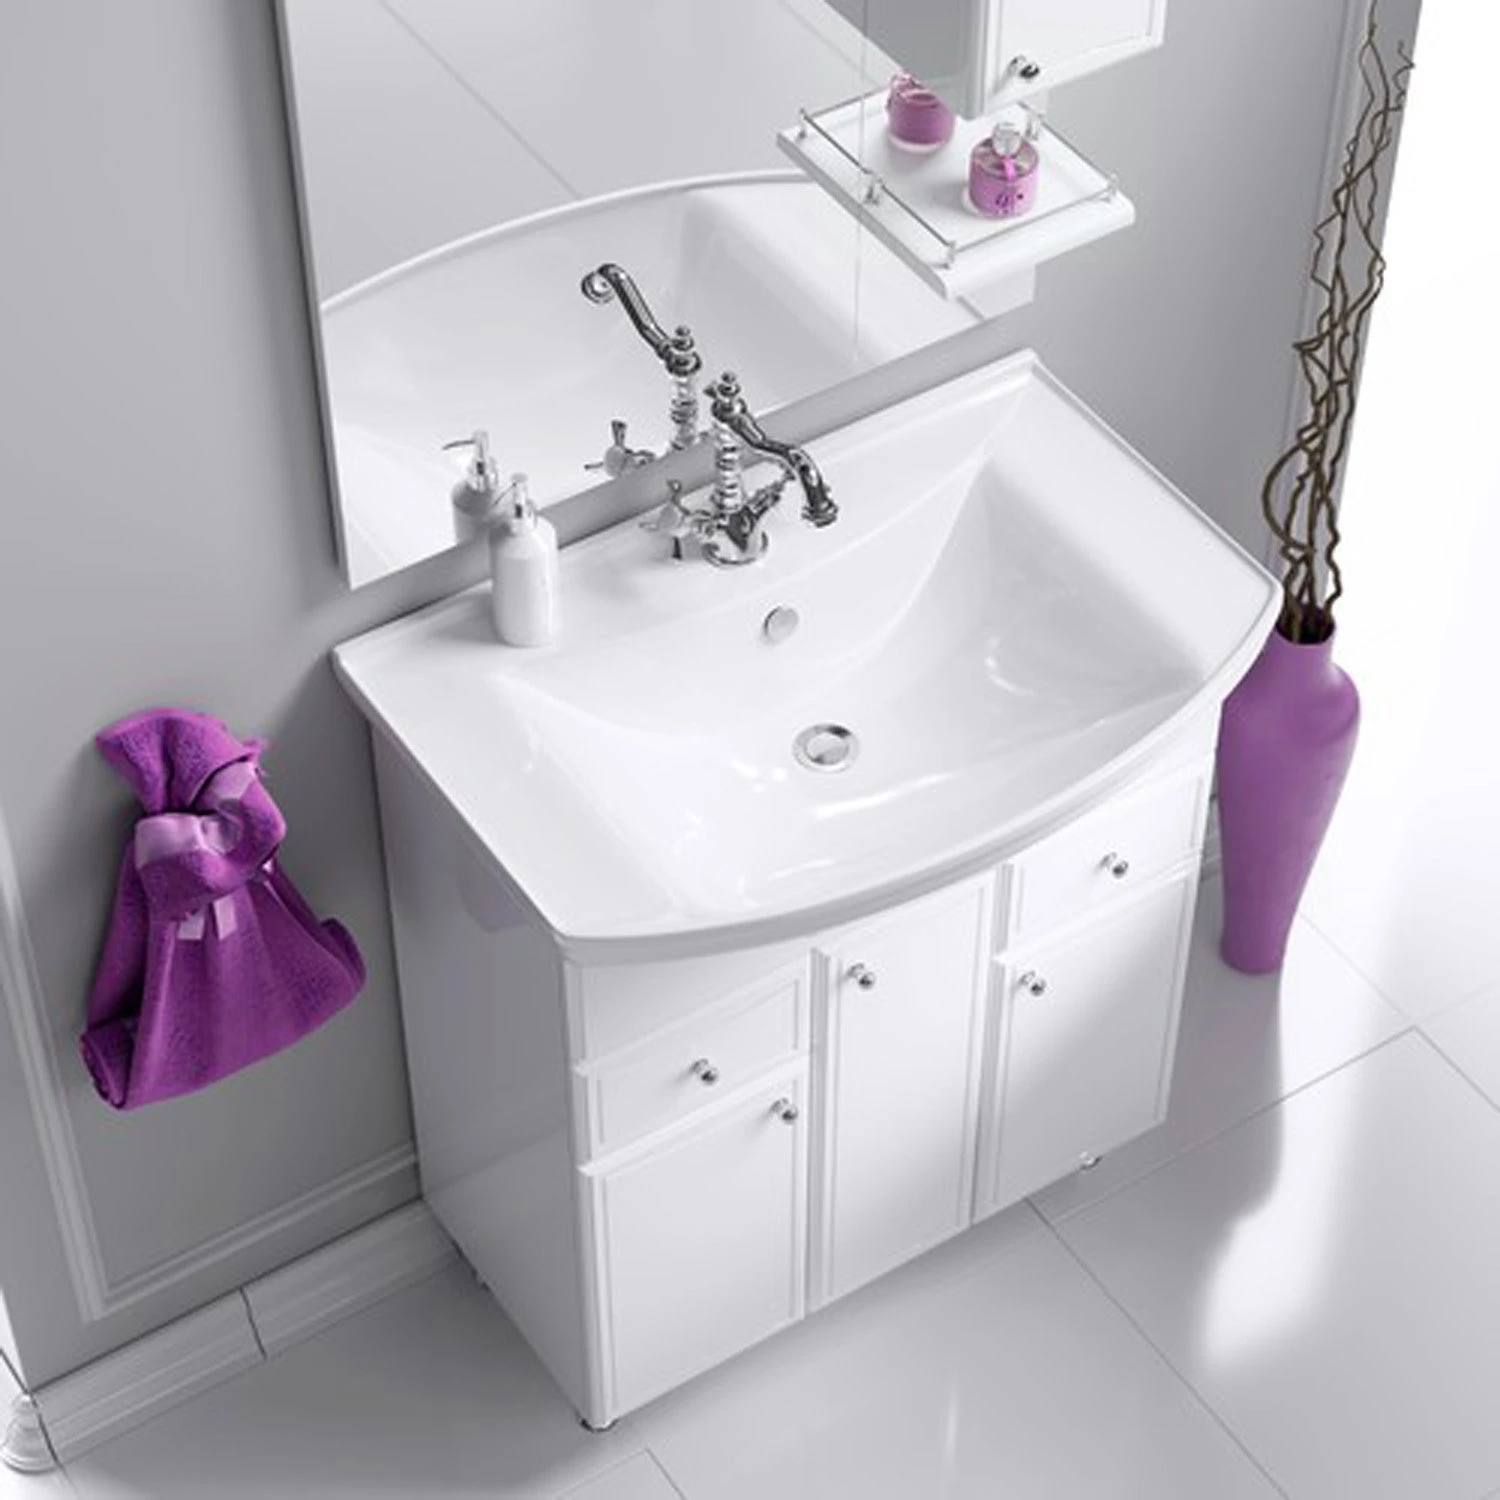 Мебель для ванной Aqwella Барселона 75, с бельевой корзиной, цвет белый - фото 1